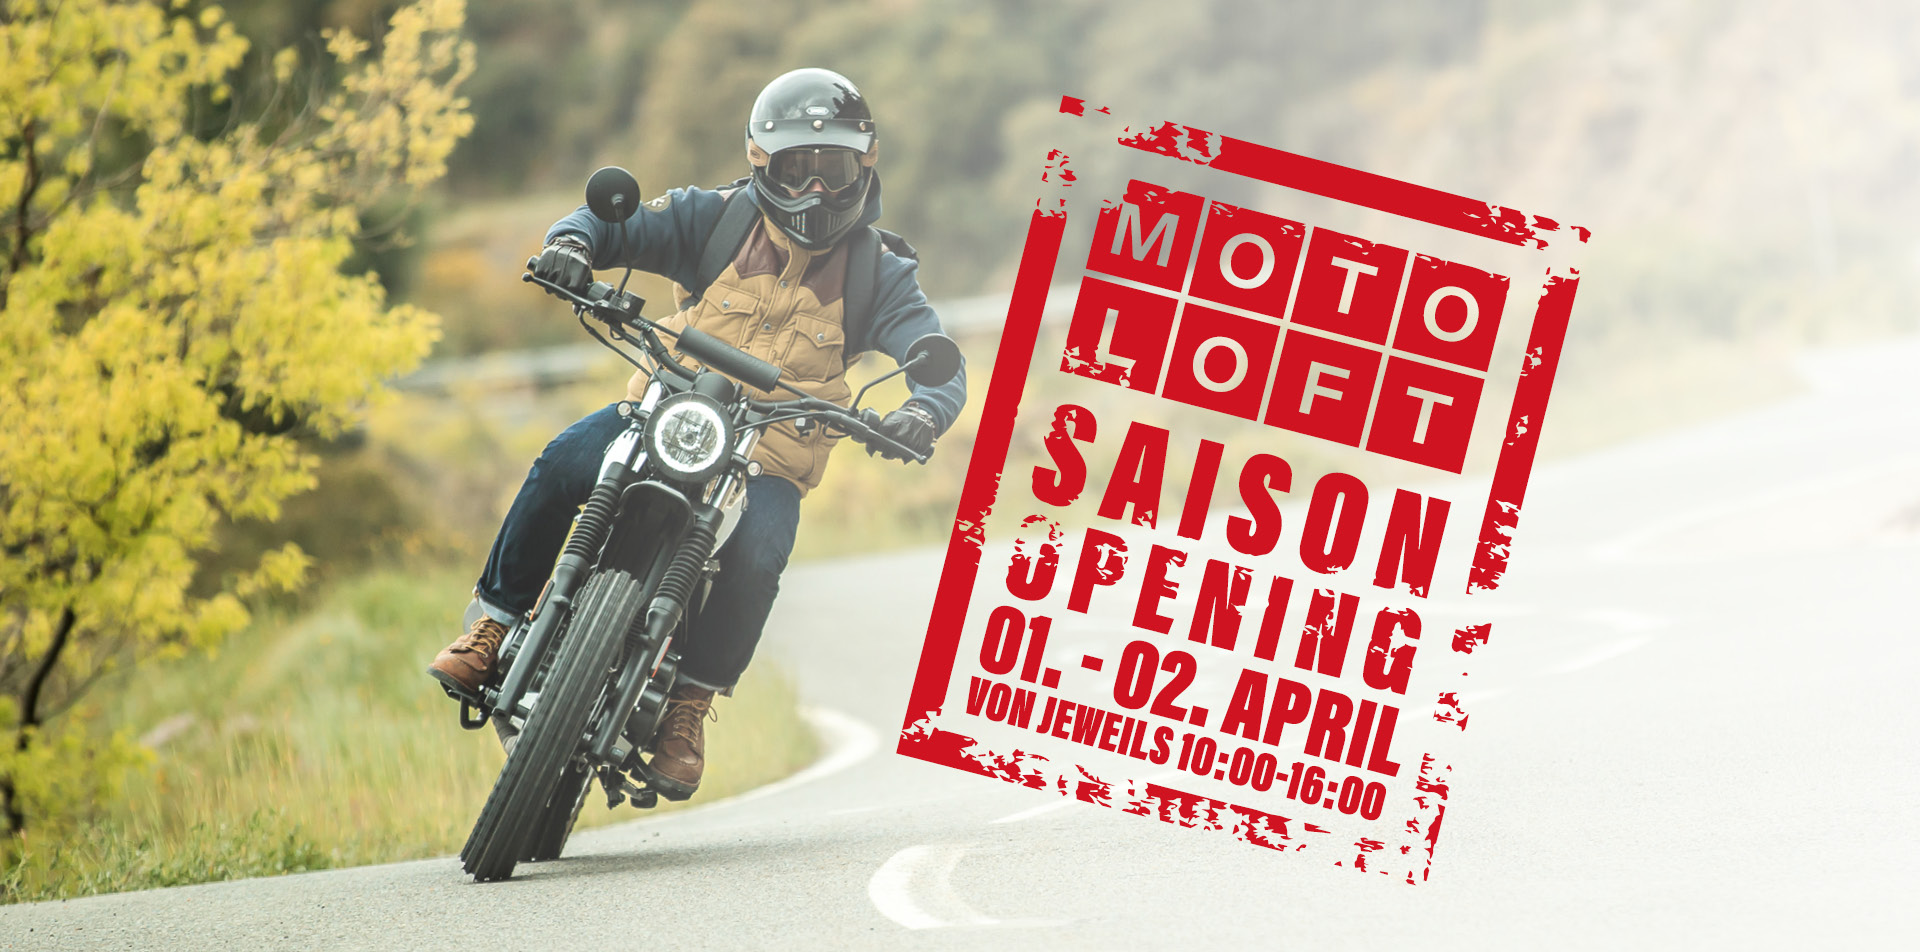 Motoloft Saison opening